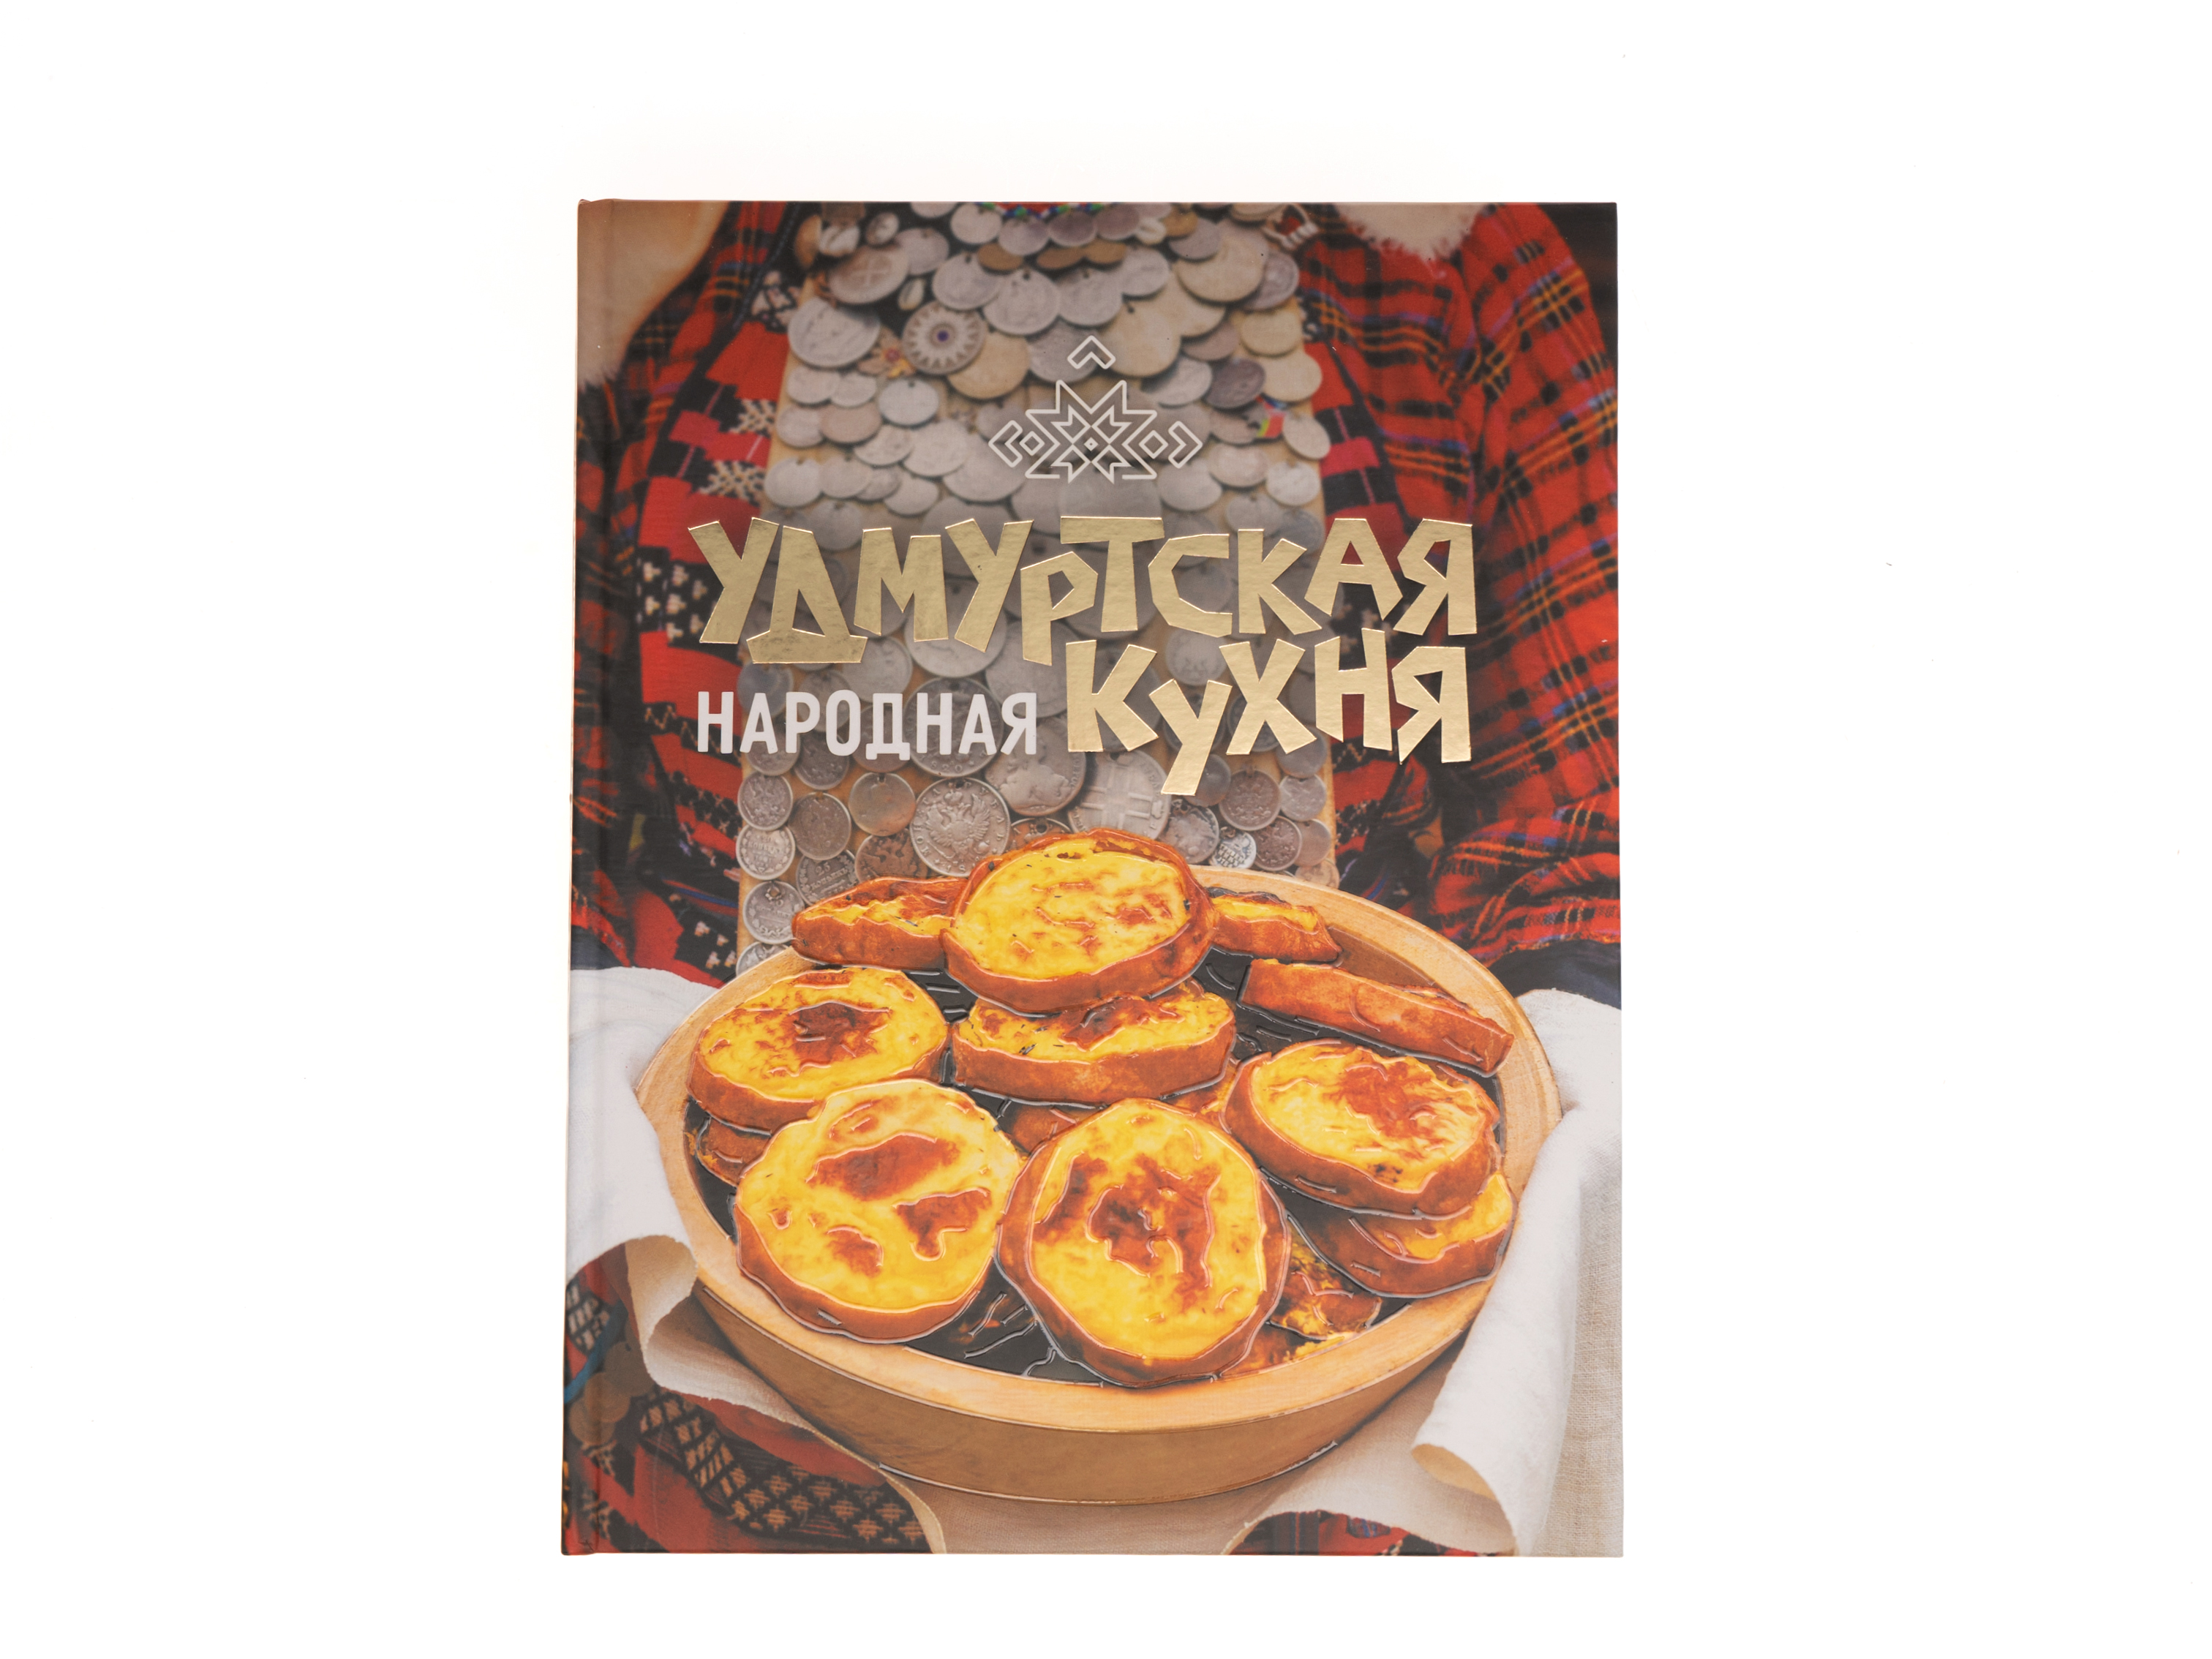 Книга "Удмуртская народная кухня"